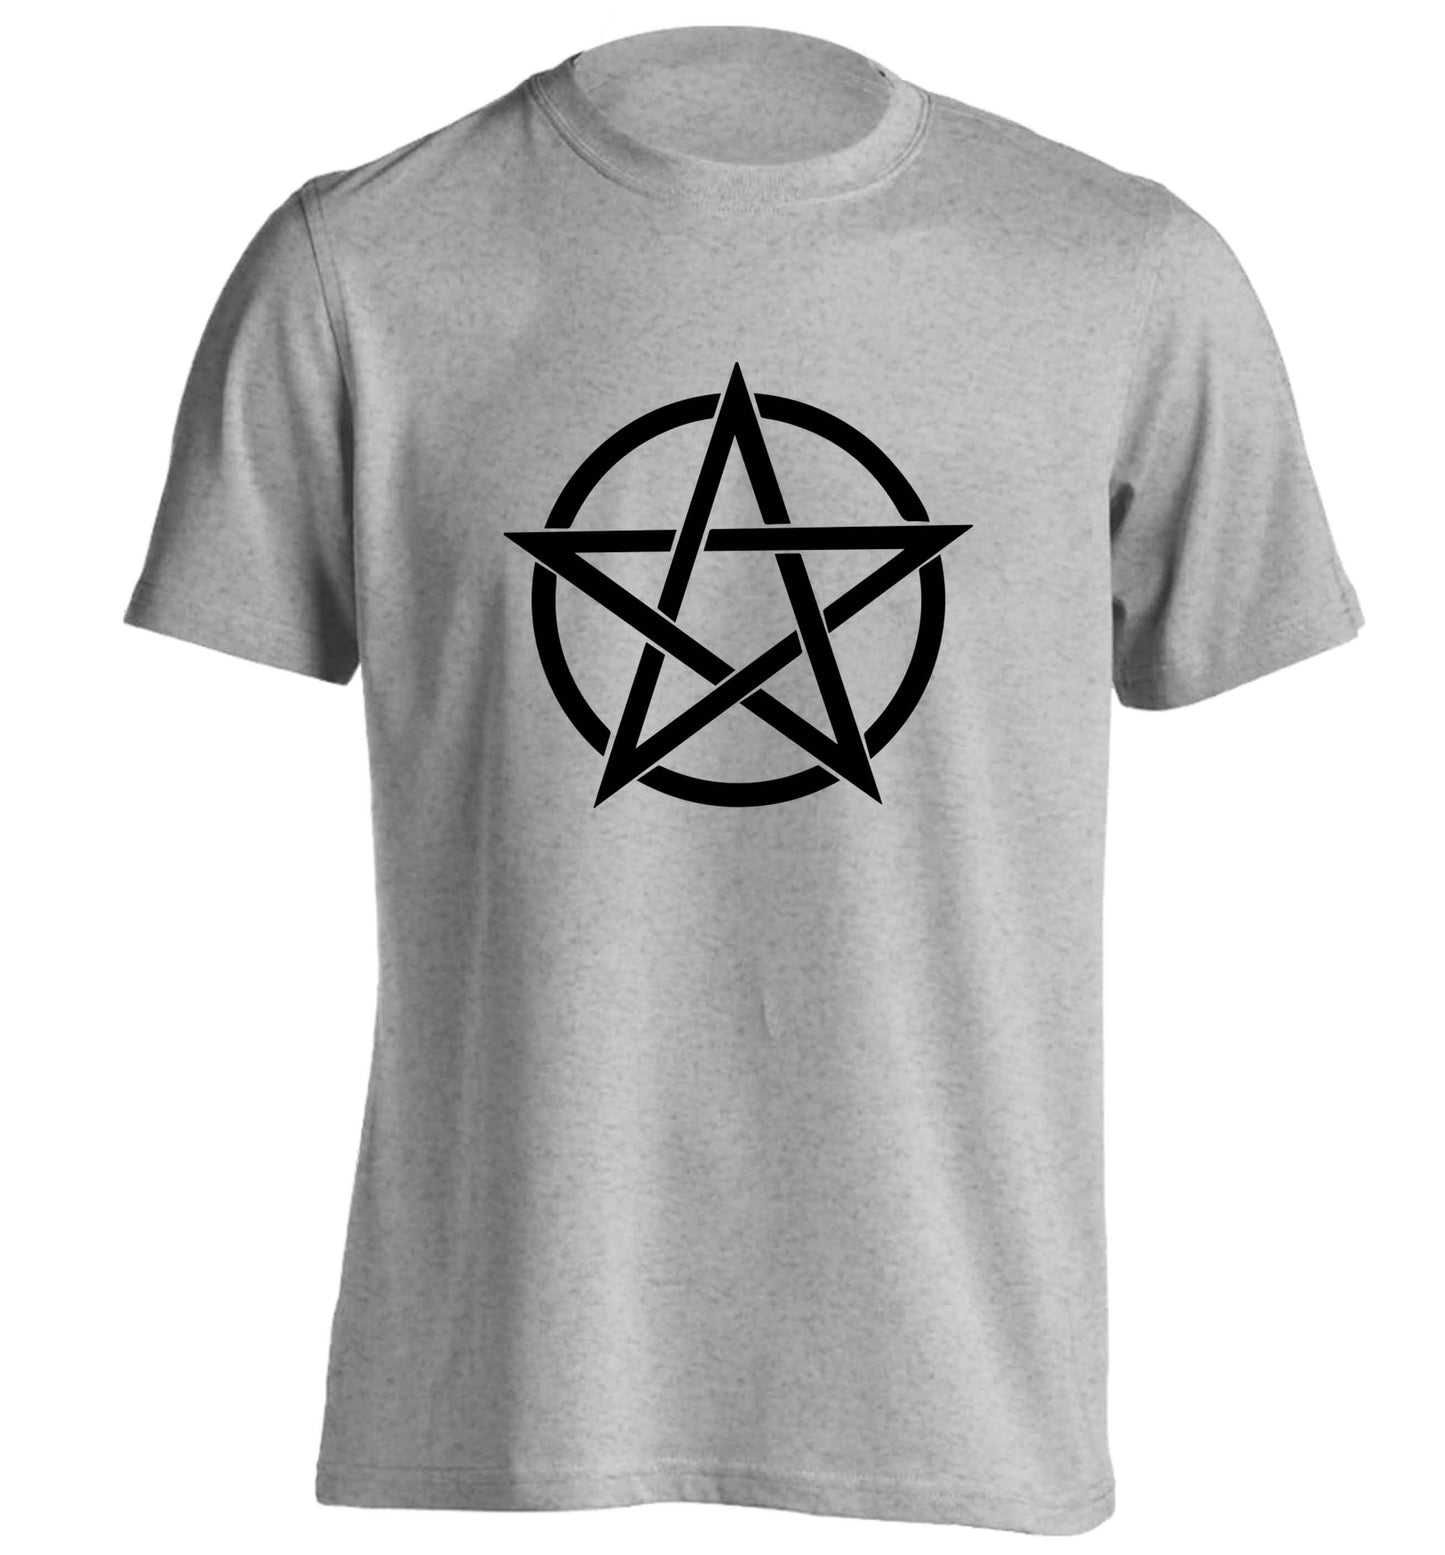 Pentagram symbol adults unisex grey Tshirt 2XL